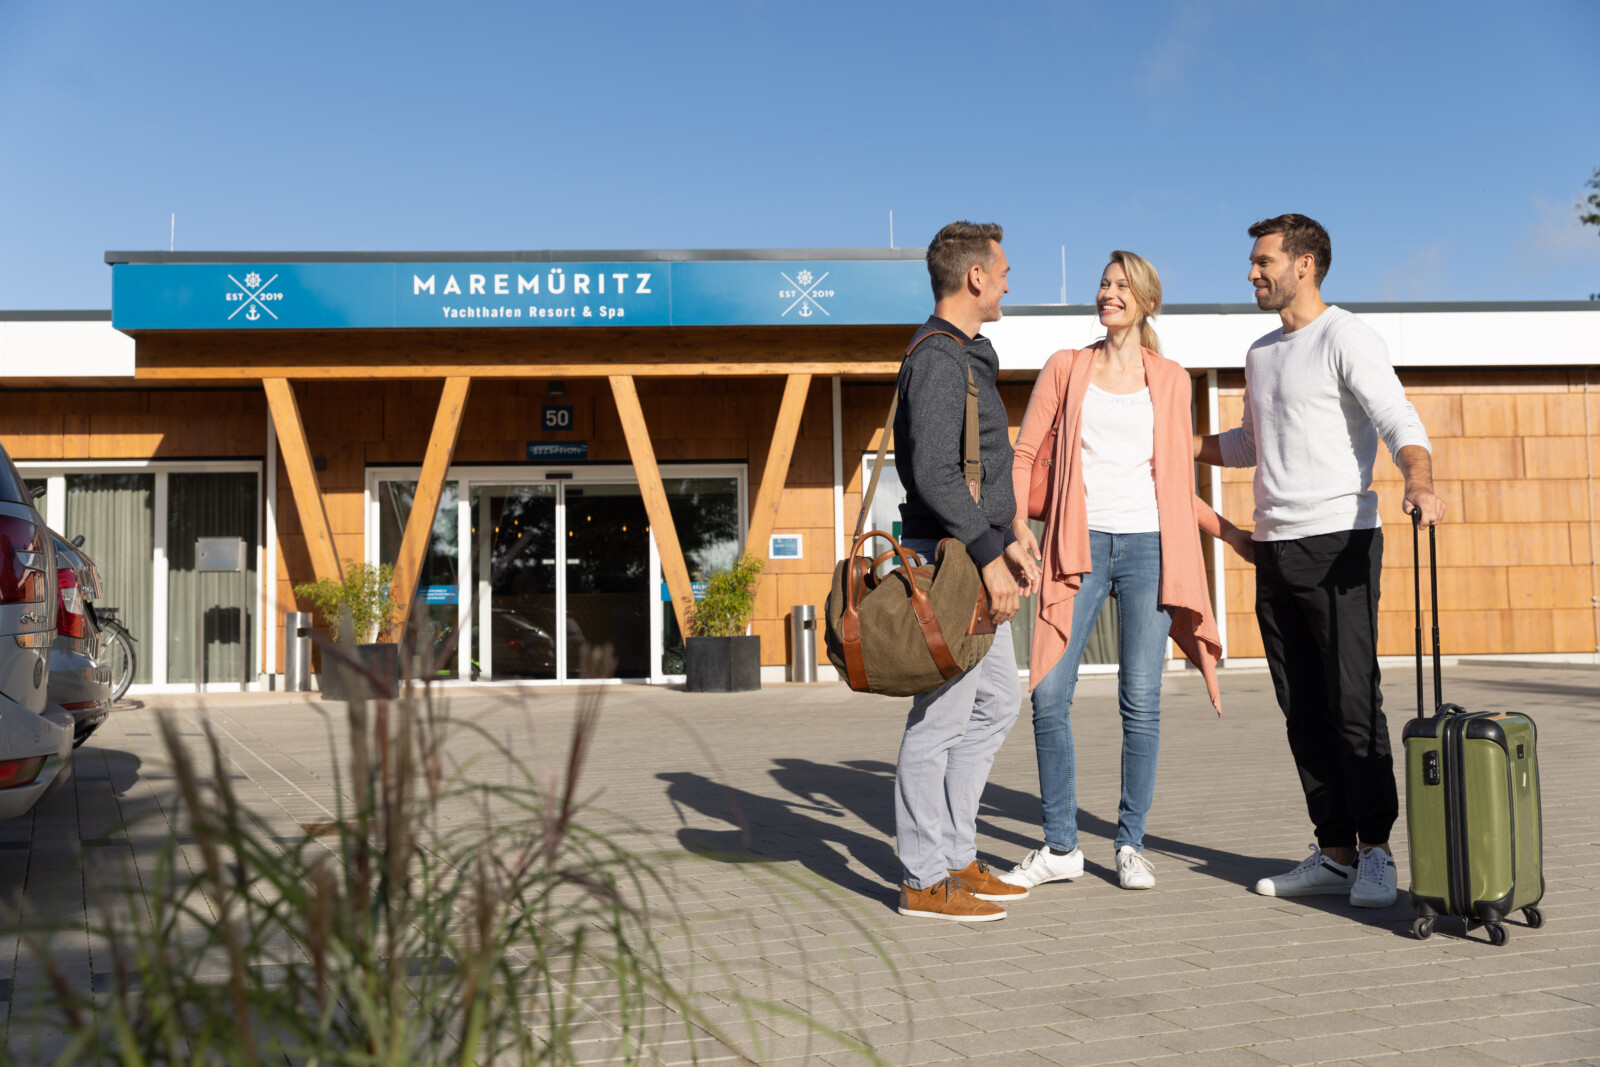 Drei Menschen mit Gepäck kommen im MareMüritz Yachthafen Resort an.